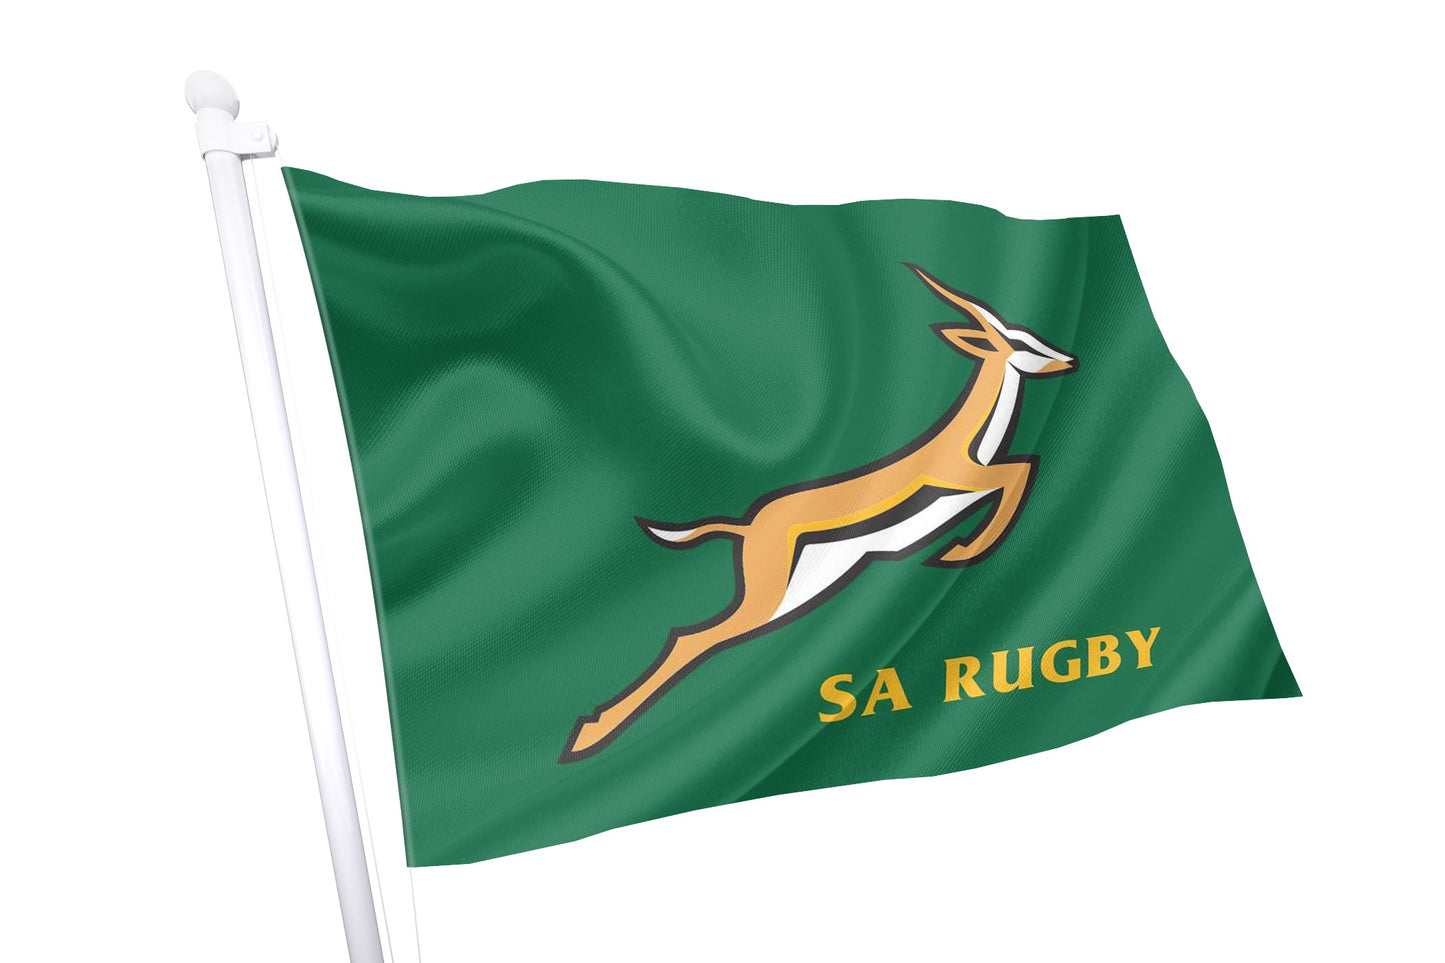 Bandeira com crista de rugby da África do Sul - The Springboks